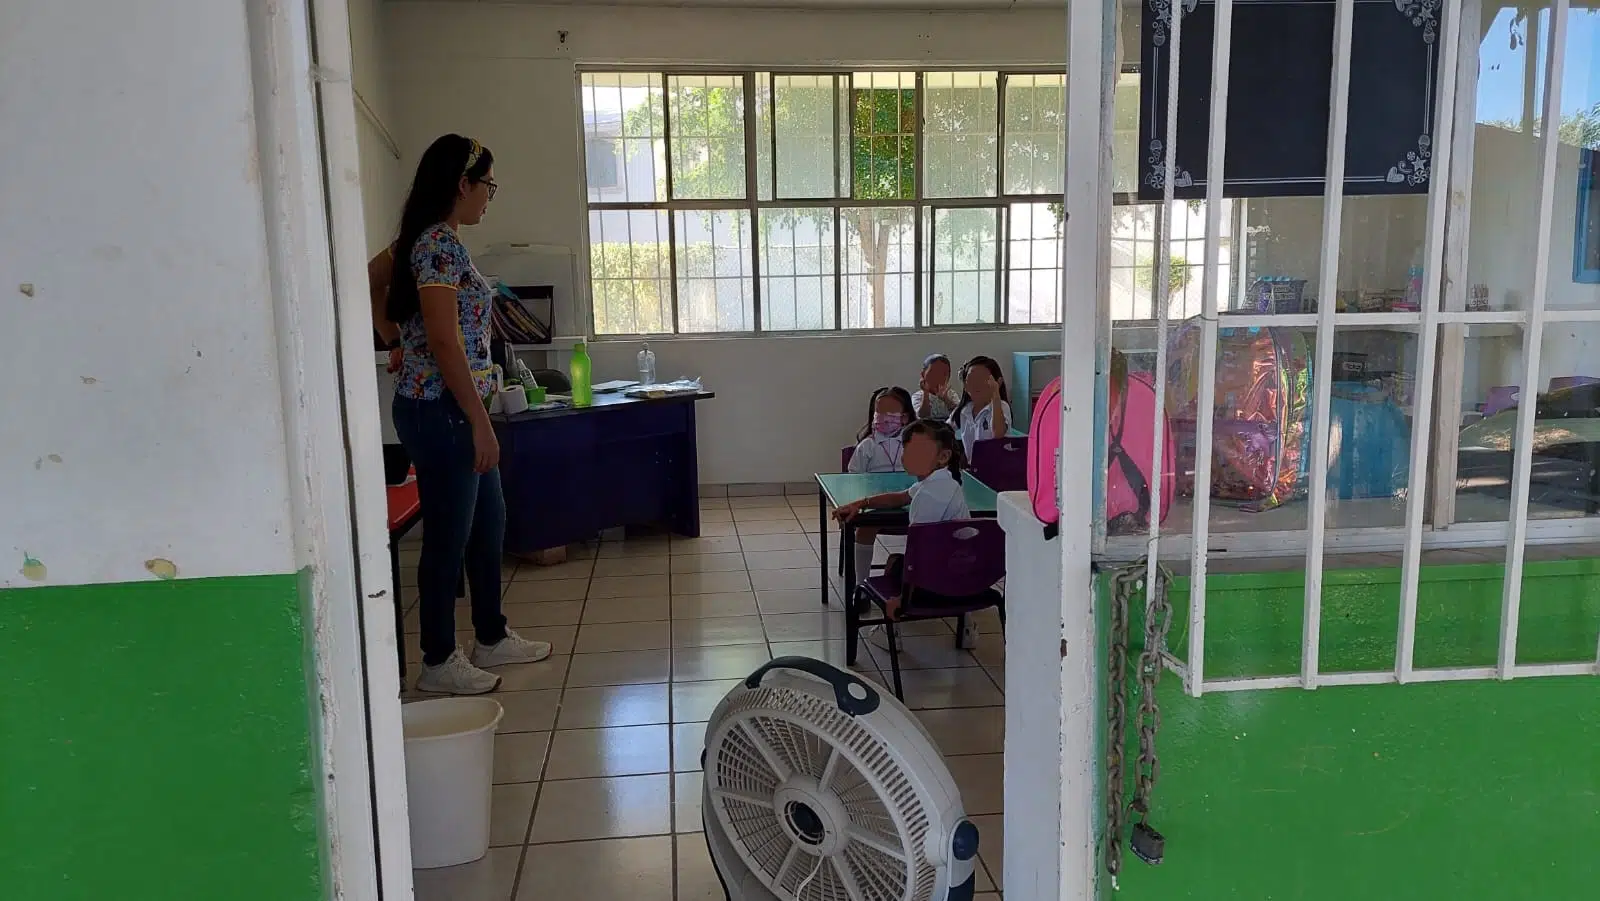 Jardin de niños Jesús Reyes Heroles, esperan en diciembre resuelva Isife problema electrico